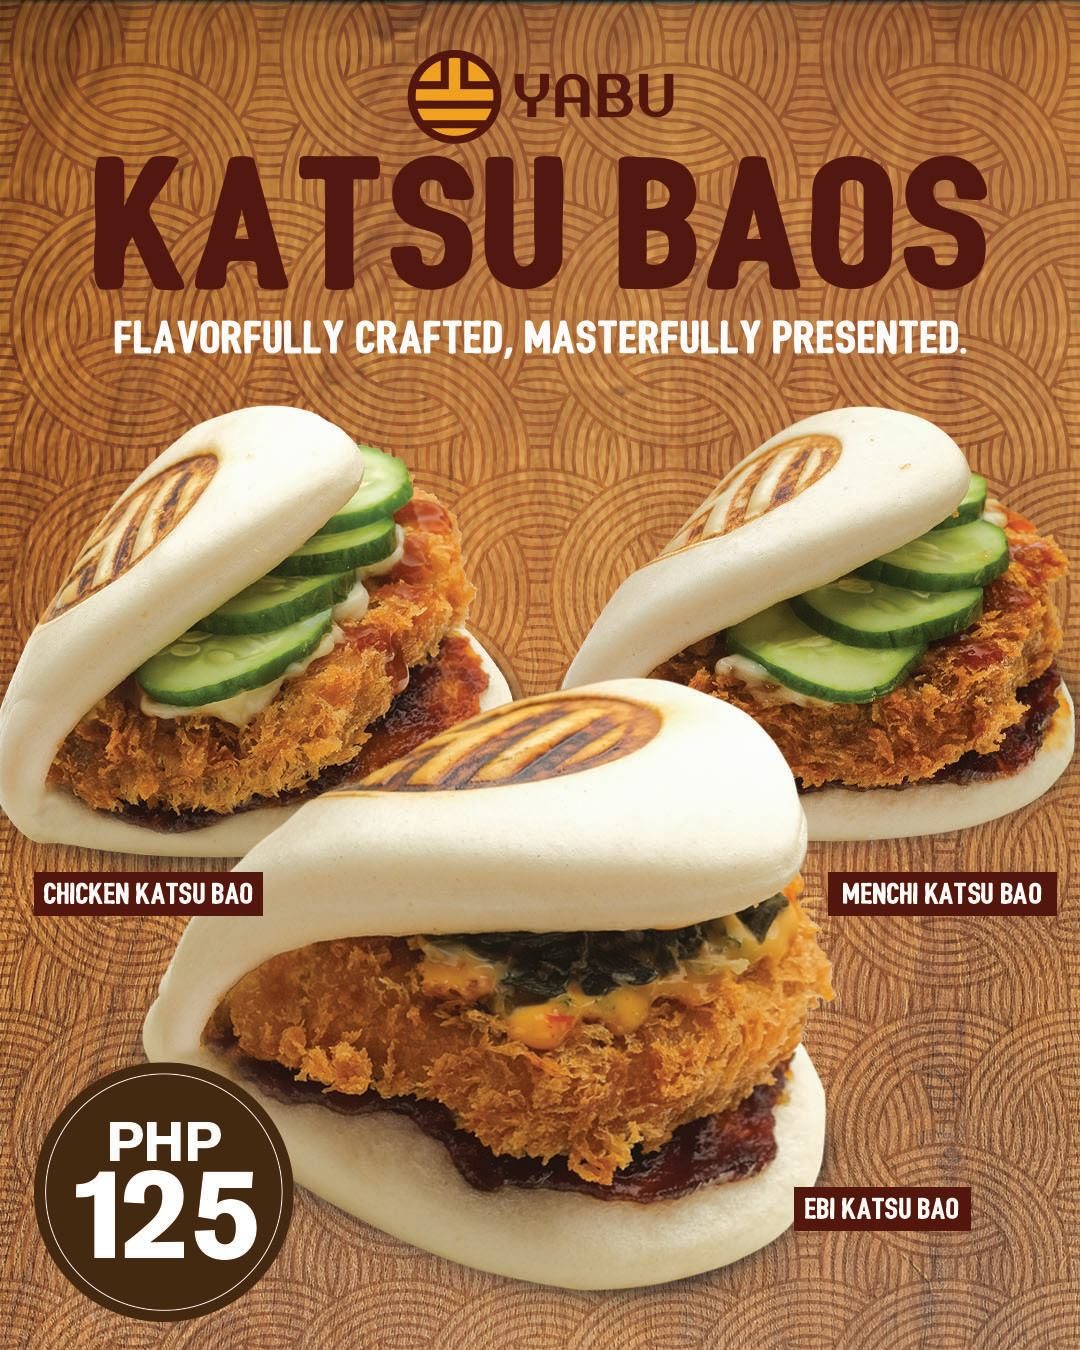 Yabu introduces new katsu baos